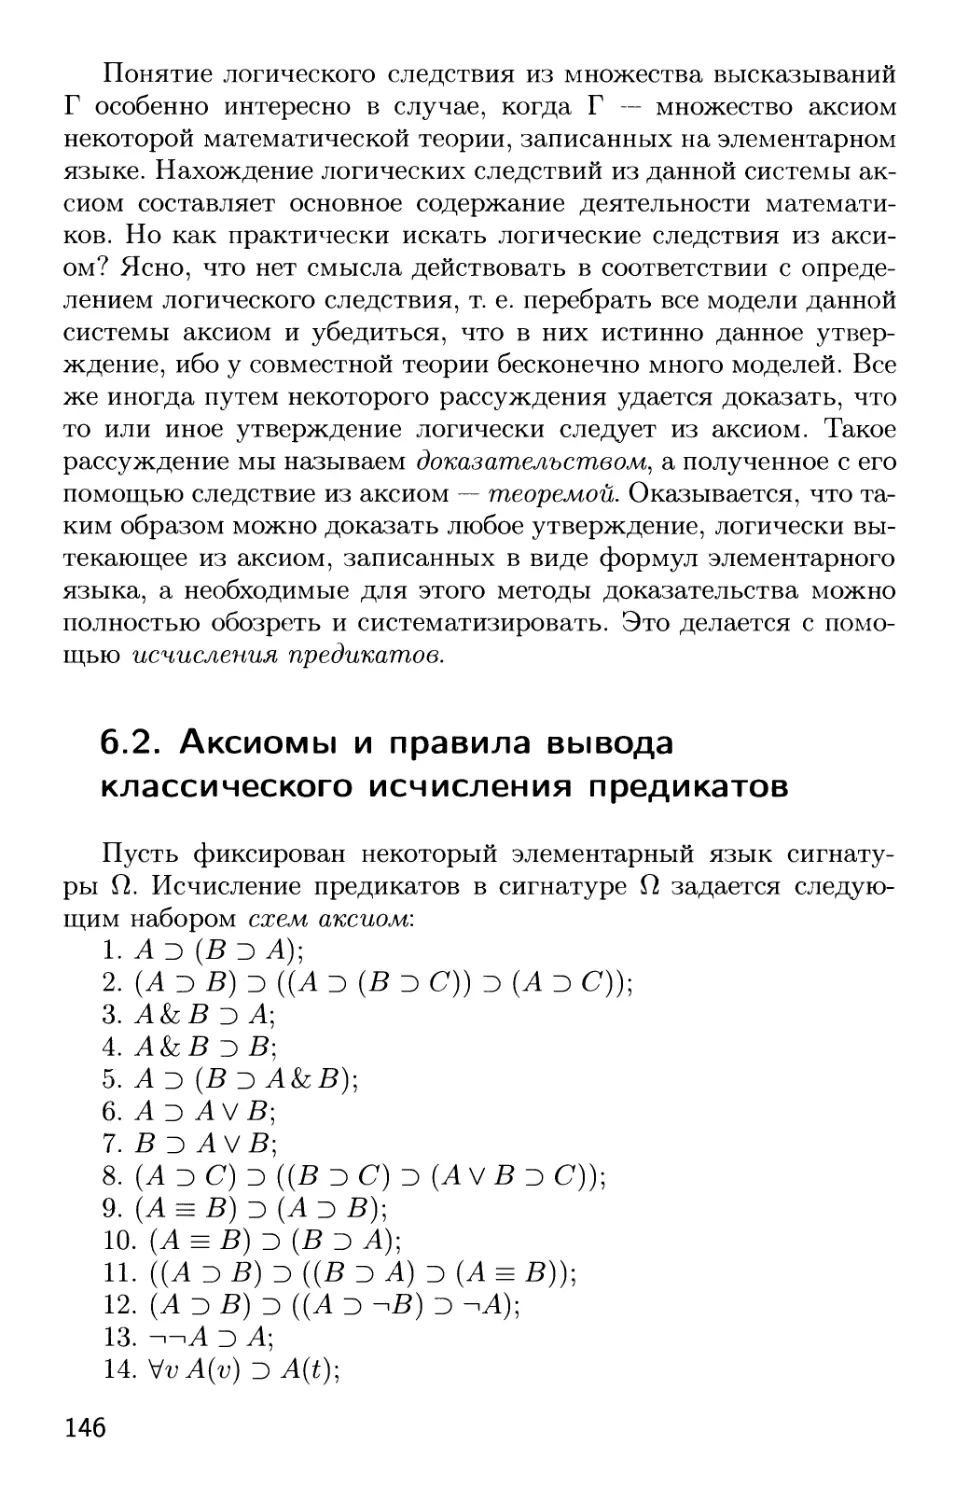 6.2. Аксиомы и правила вывода классического исчисления предикатов